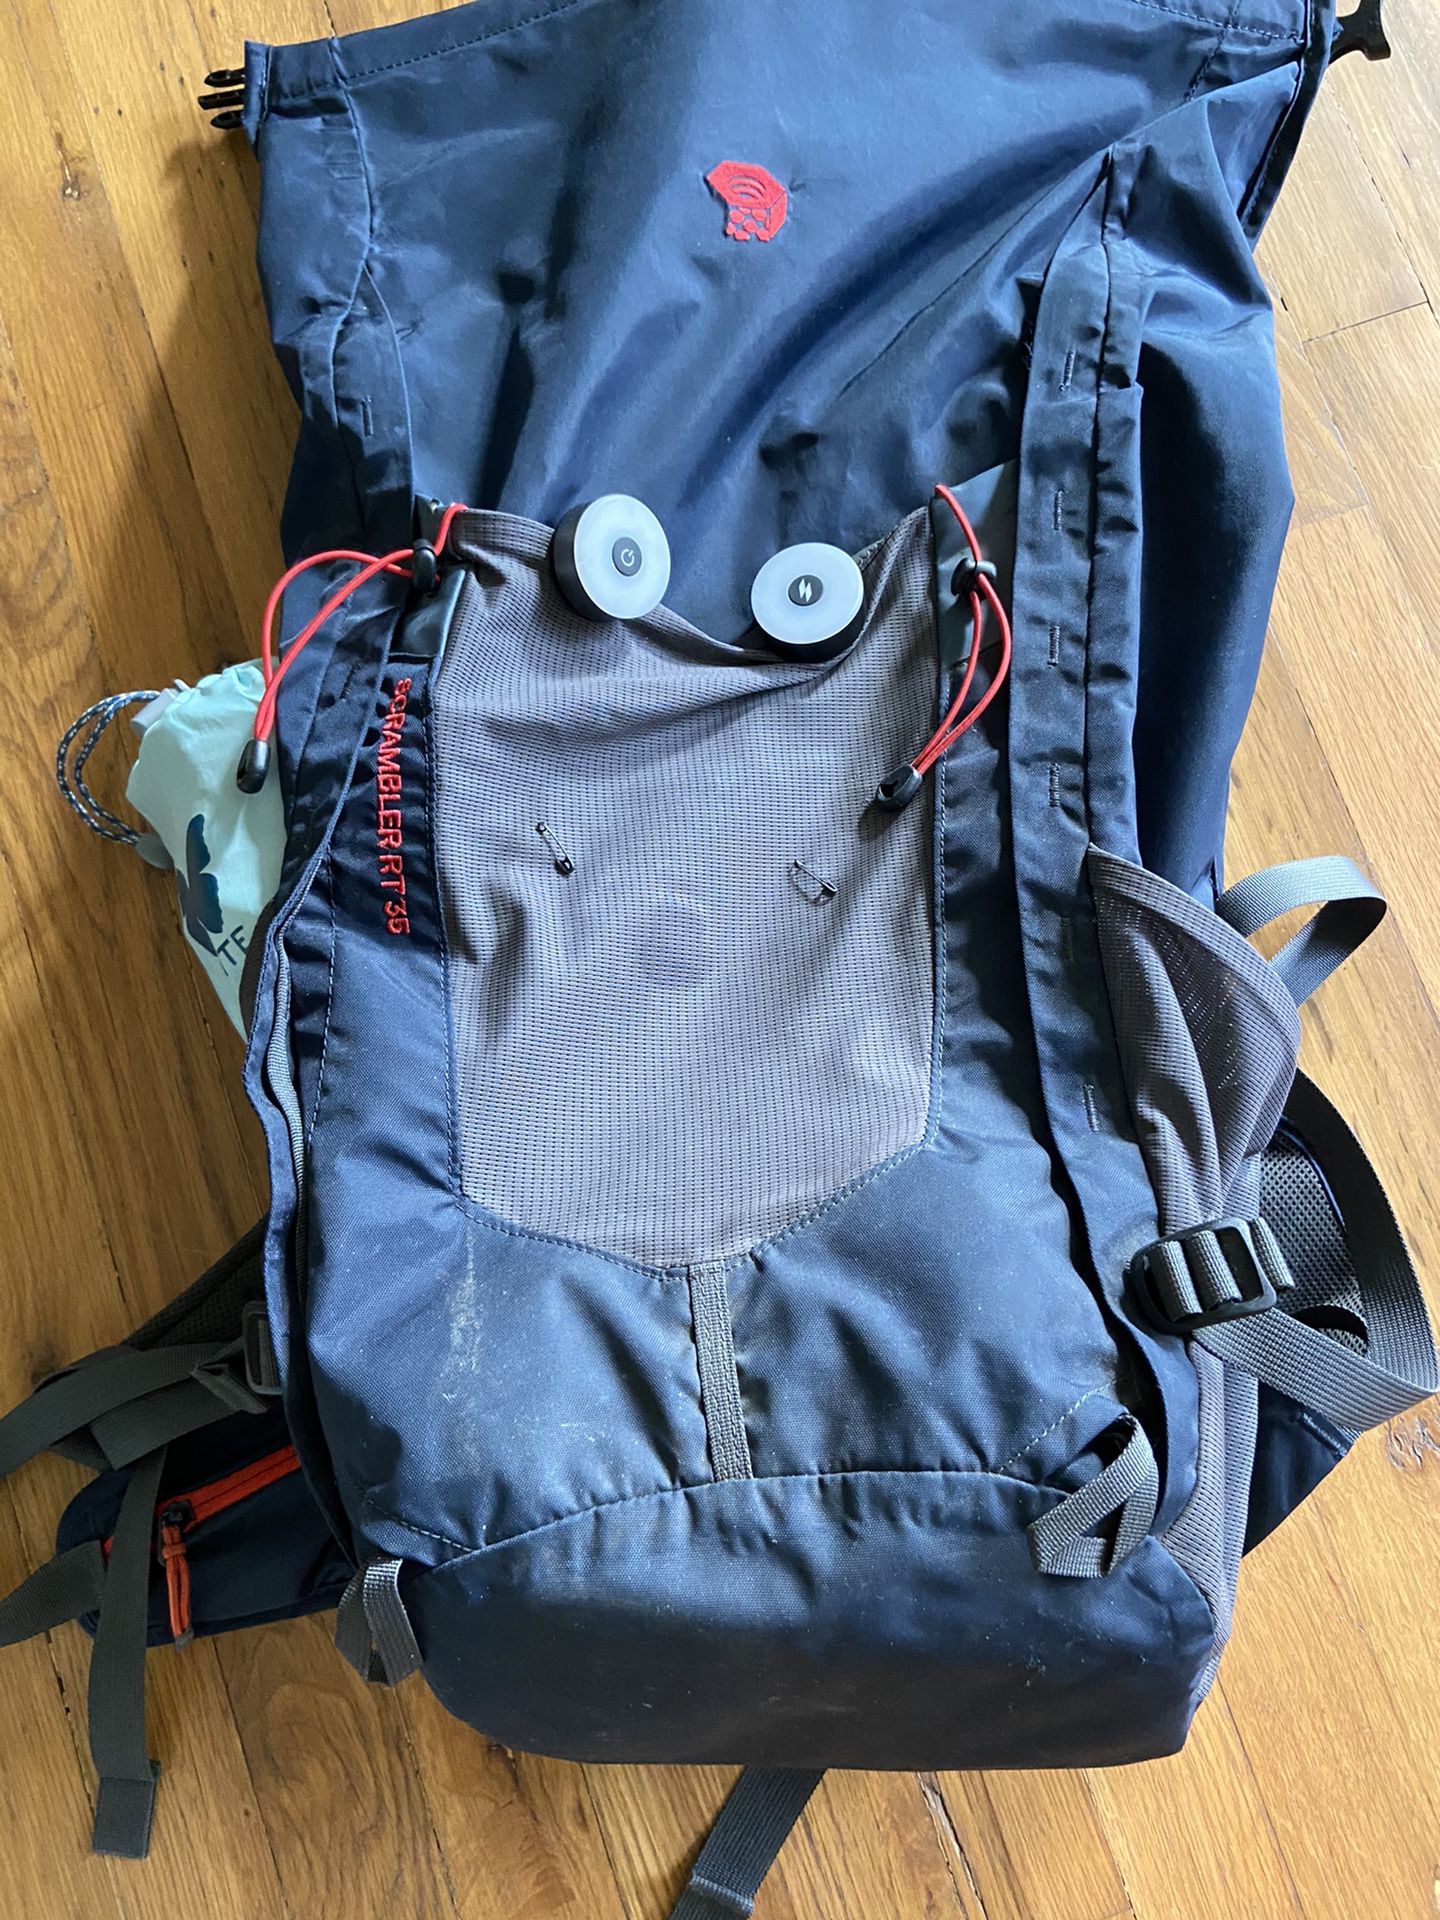 Mountain Hardwear Scrambler™ 35 Backpack waterproof